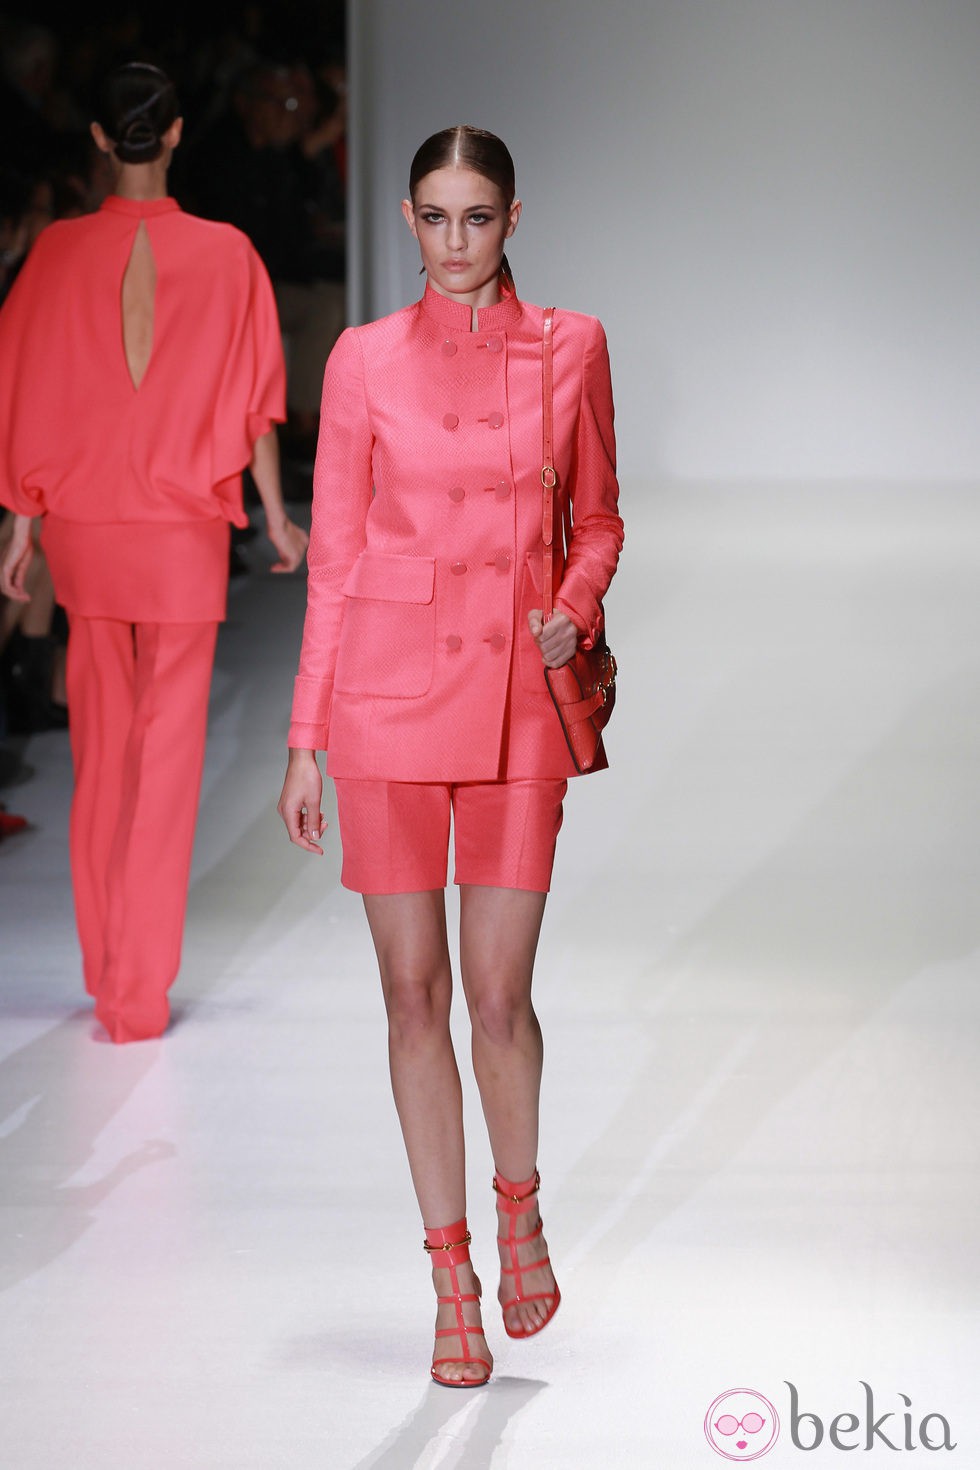 Conjunto de dos piezas en color coral en el desfile de Gucci en la Semana de la Moda de Milán primavera/verano 2013